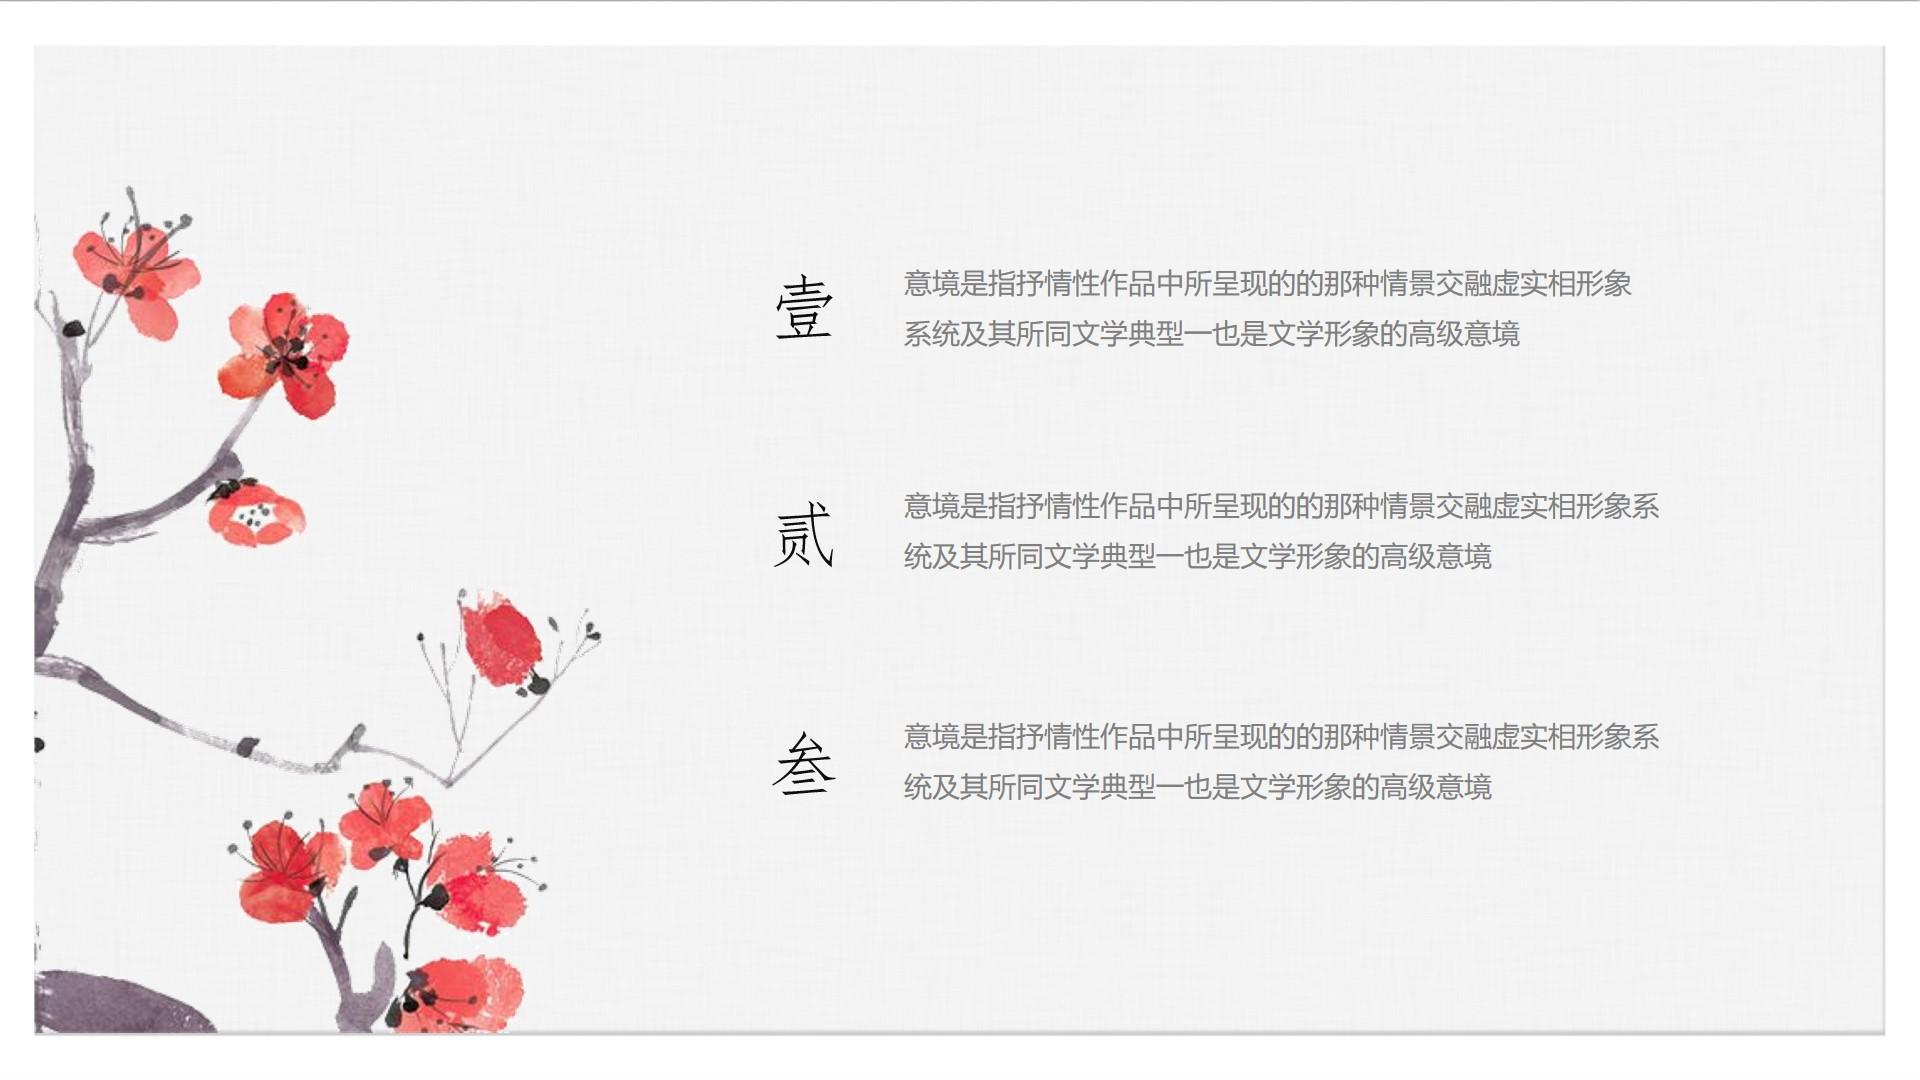 教育教学白色灰色简洁中国风素雅文学情景交融形象意境系统云素材PPT模板1672598291229